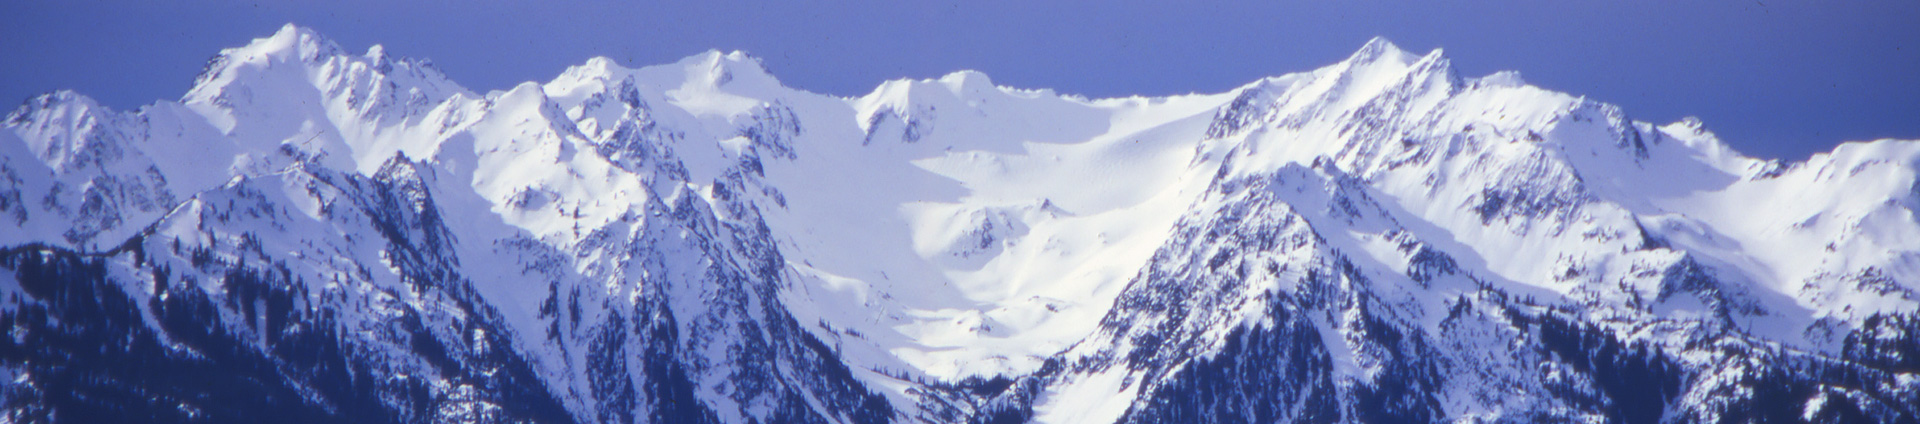 बर्फ में ओलंपिक पहाड़ों की हेडर छवि